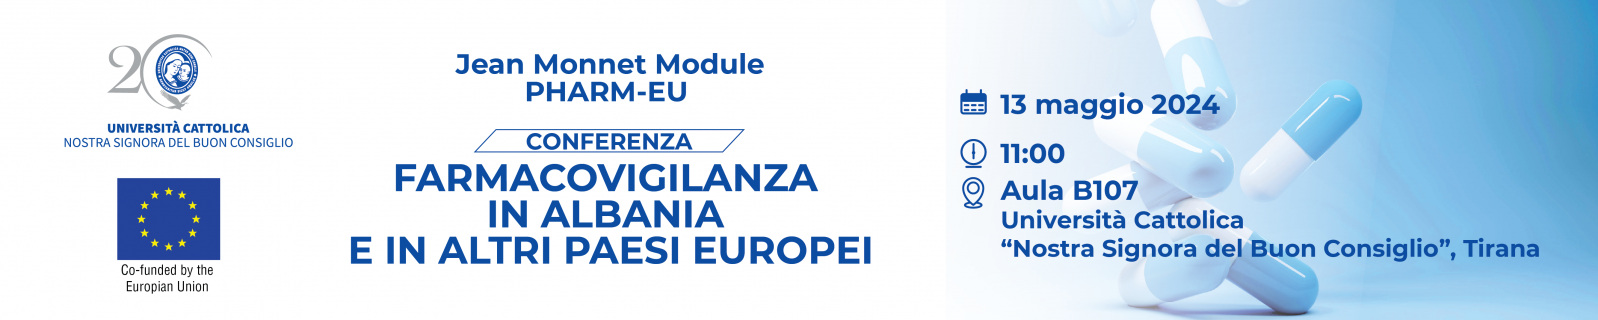 conferenza-farmacovigilanza-in-albania-e-in-altri-paesi-europei